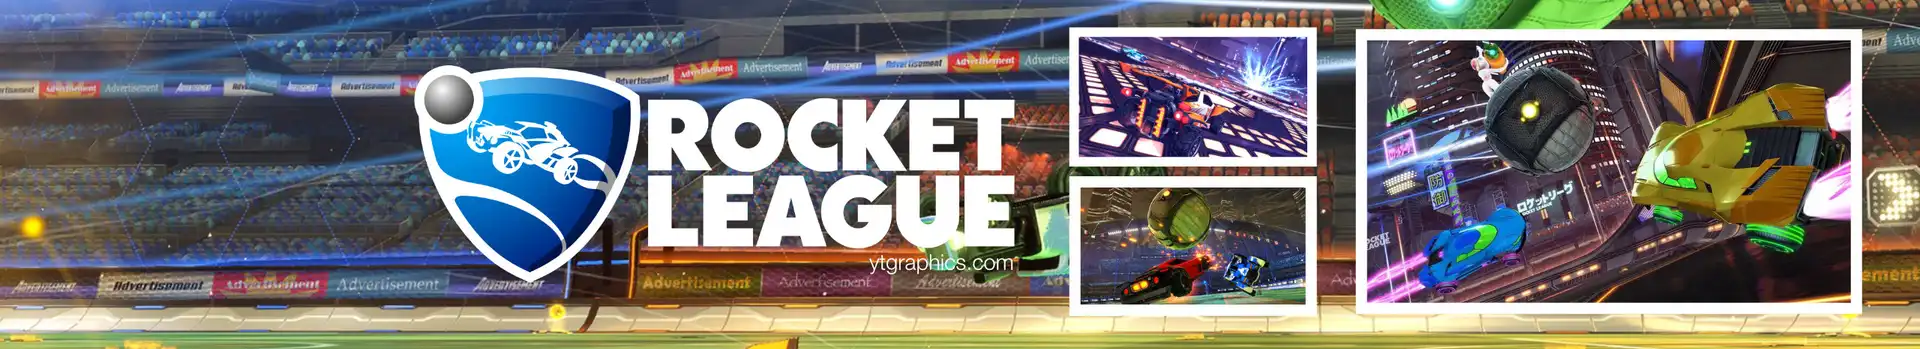 Rocket League [2] preview